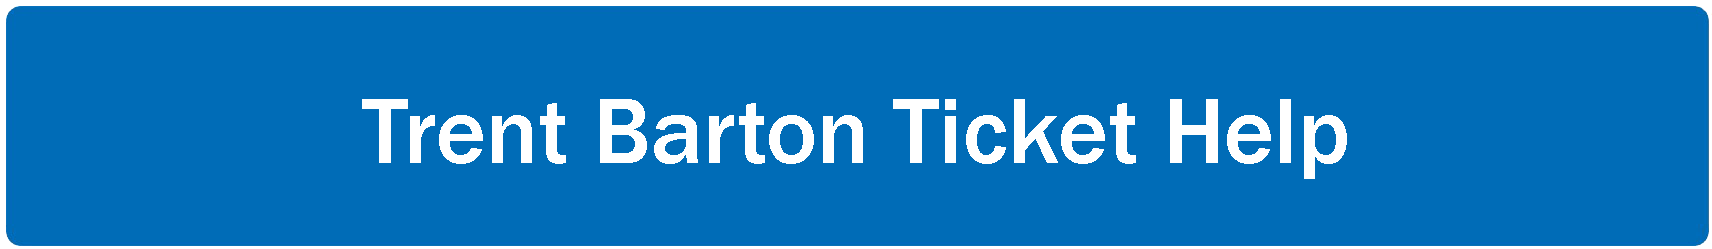 Trent Barton Ticket Help